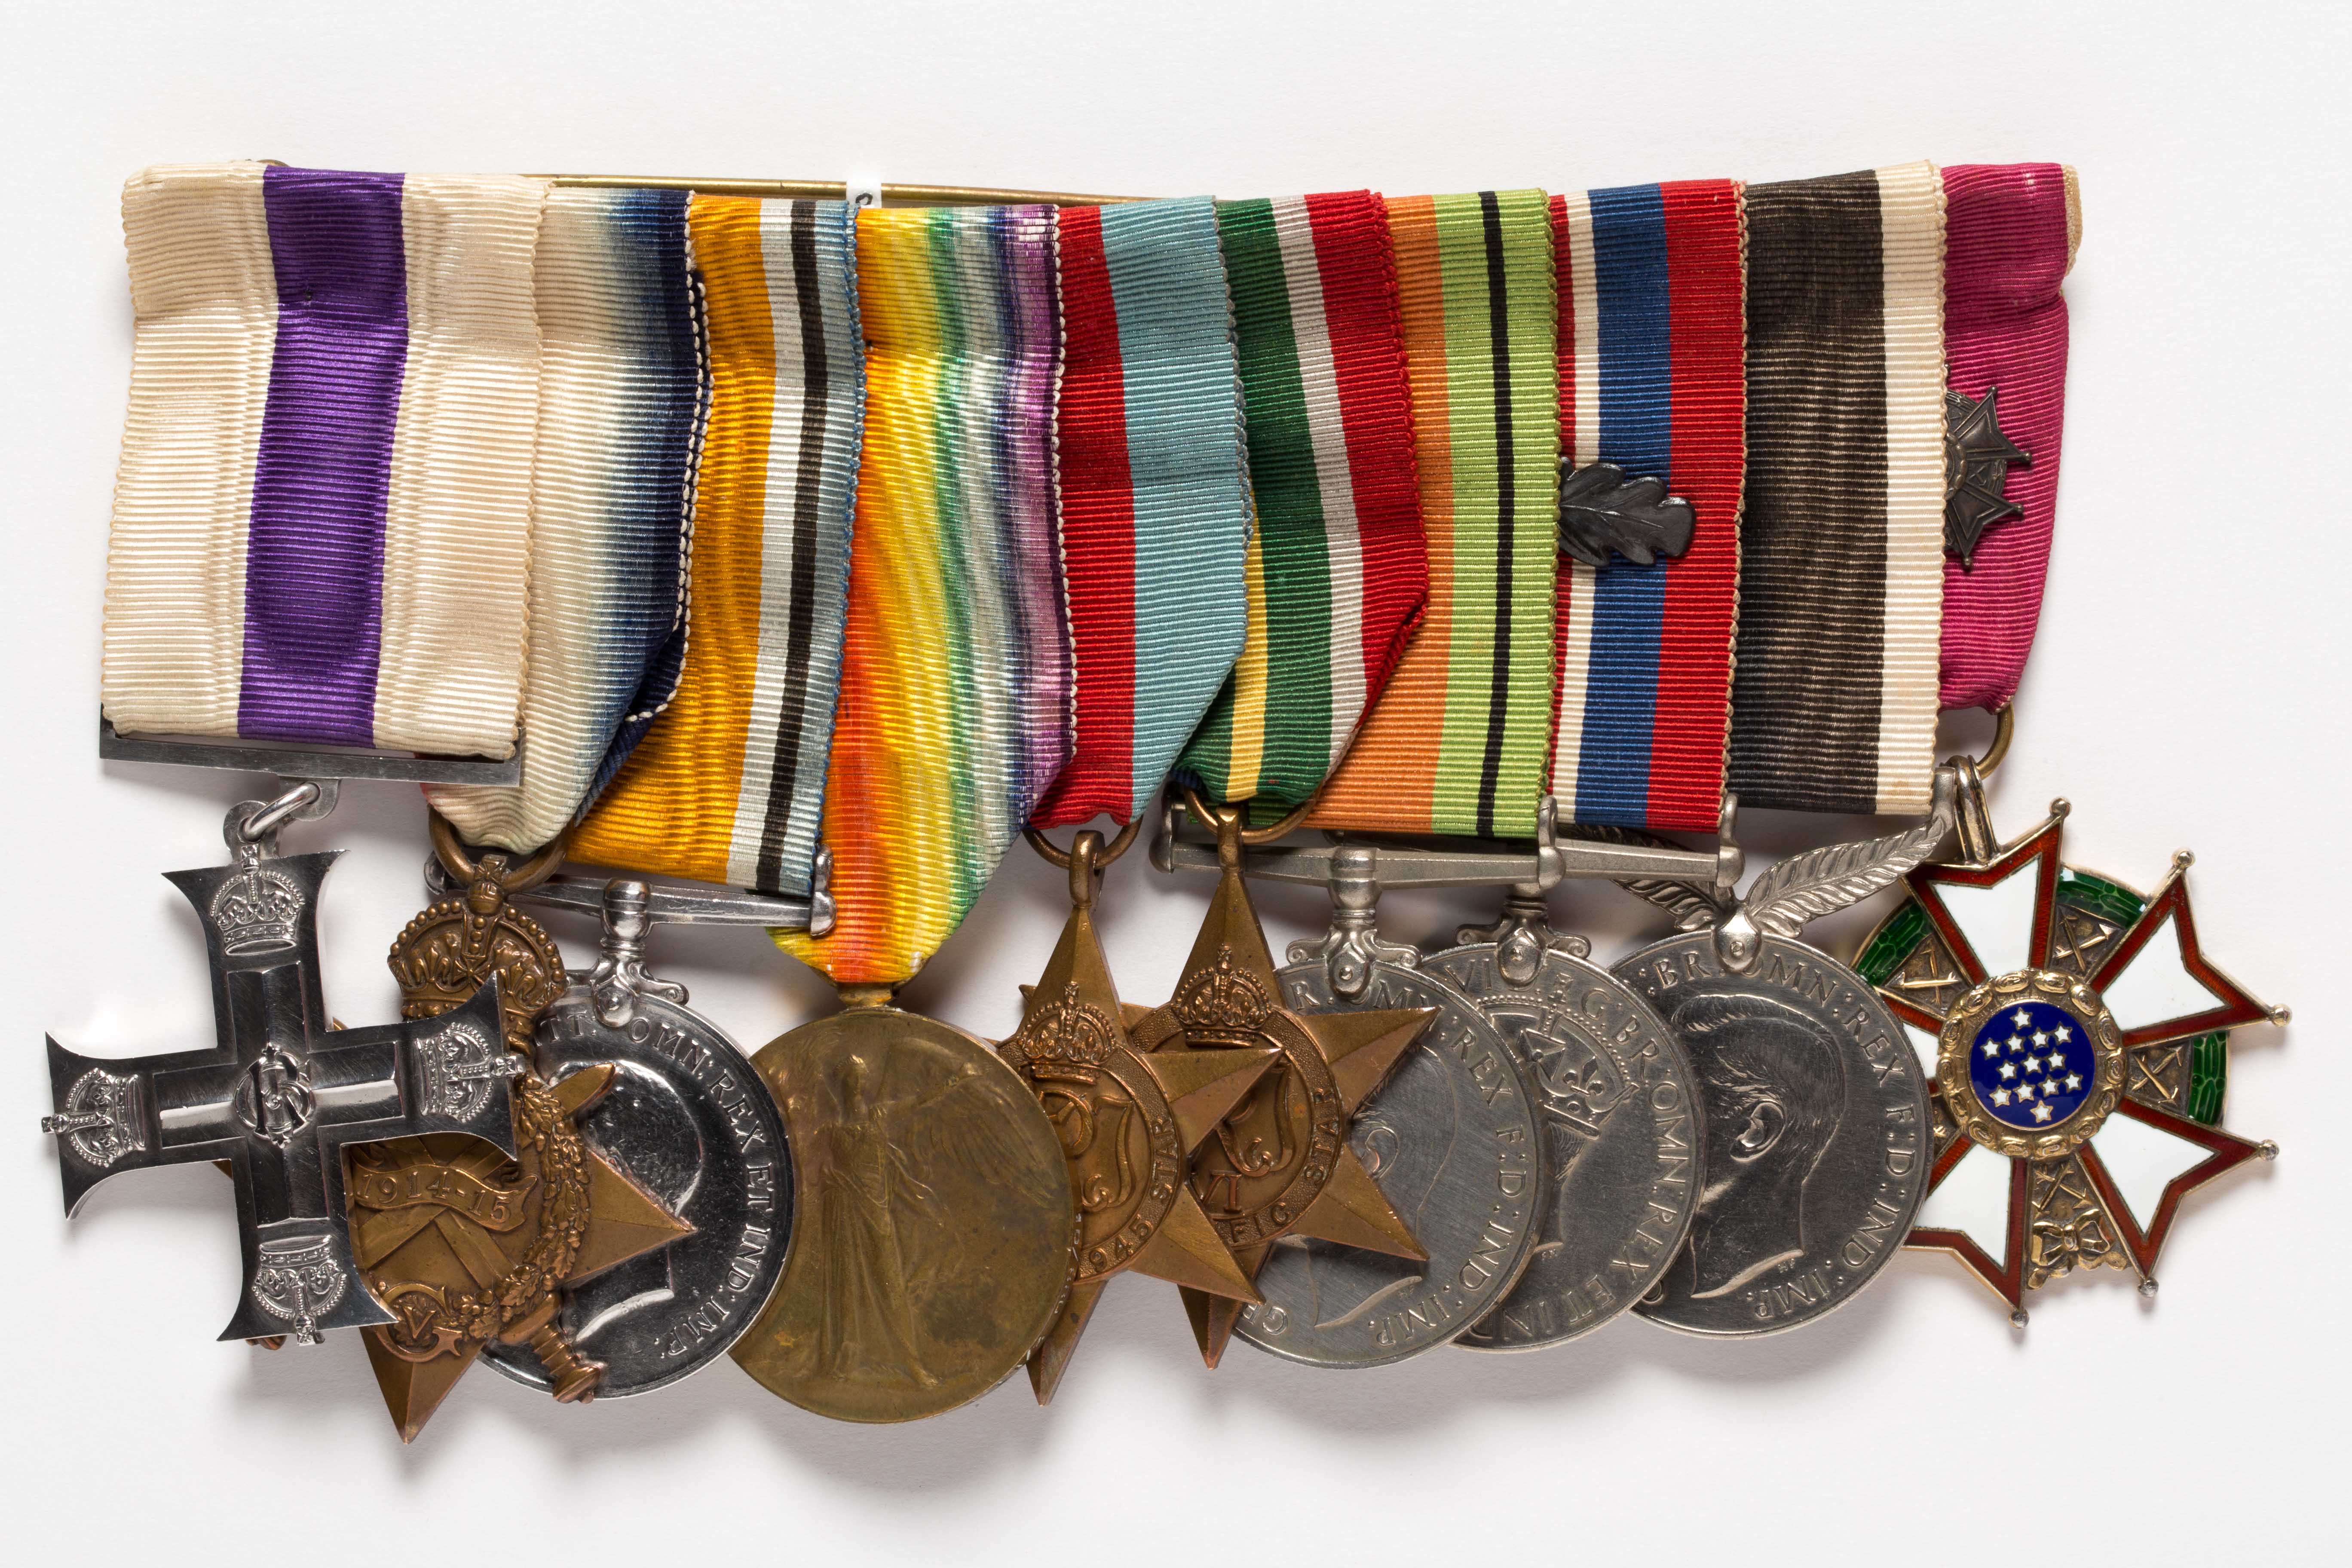 Windows medals. Polenfeldzug медаль. Медаль за Варшаву 1939 1945 Польша. Великобритания медаль обороны 1939-45.